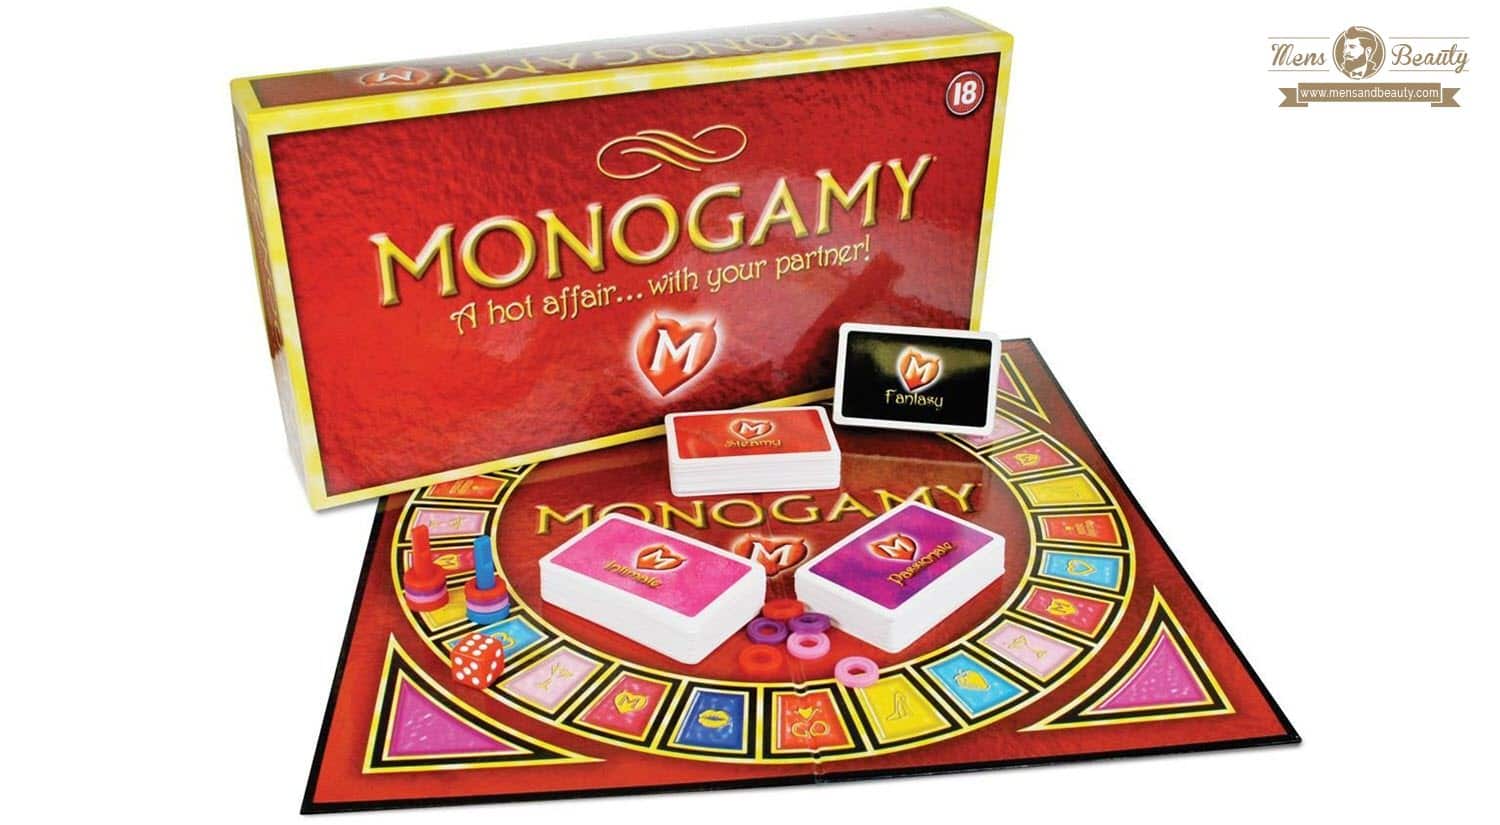 mejores juegos para parejas novios eroticos adultos sexuales juego de mesa sexo monogamy